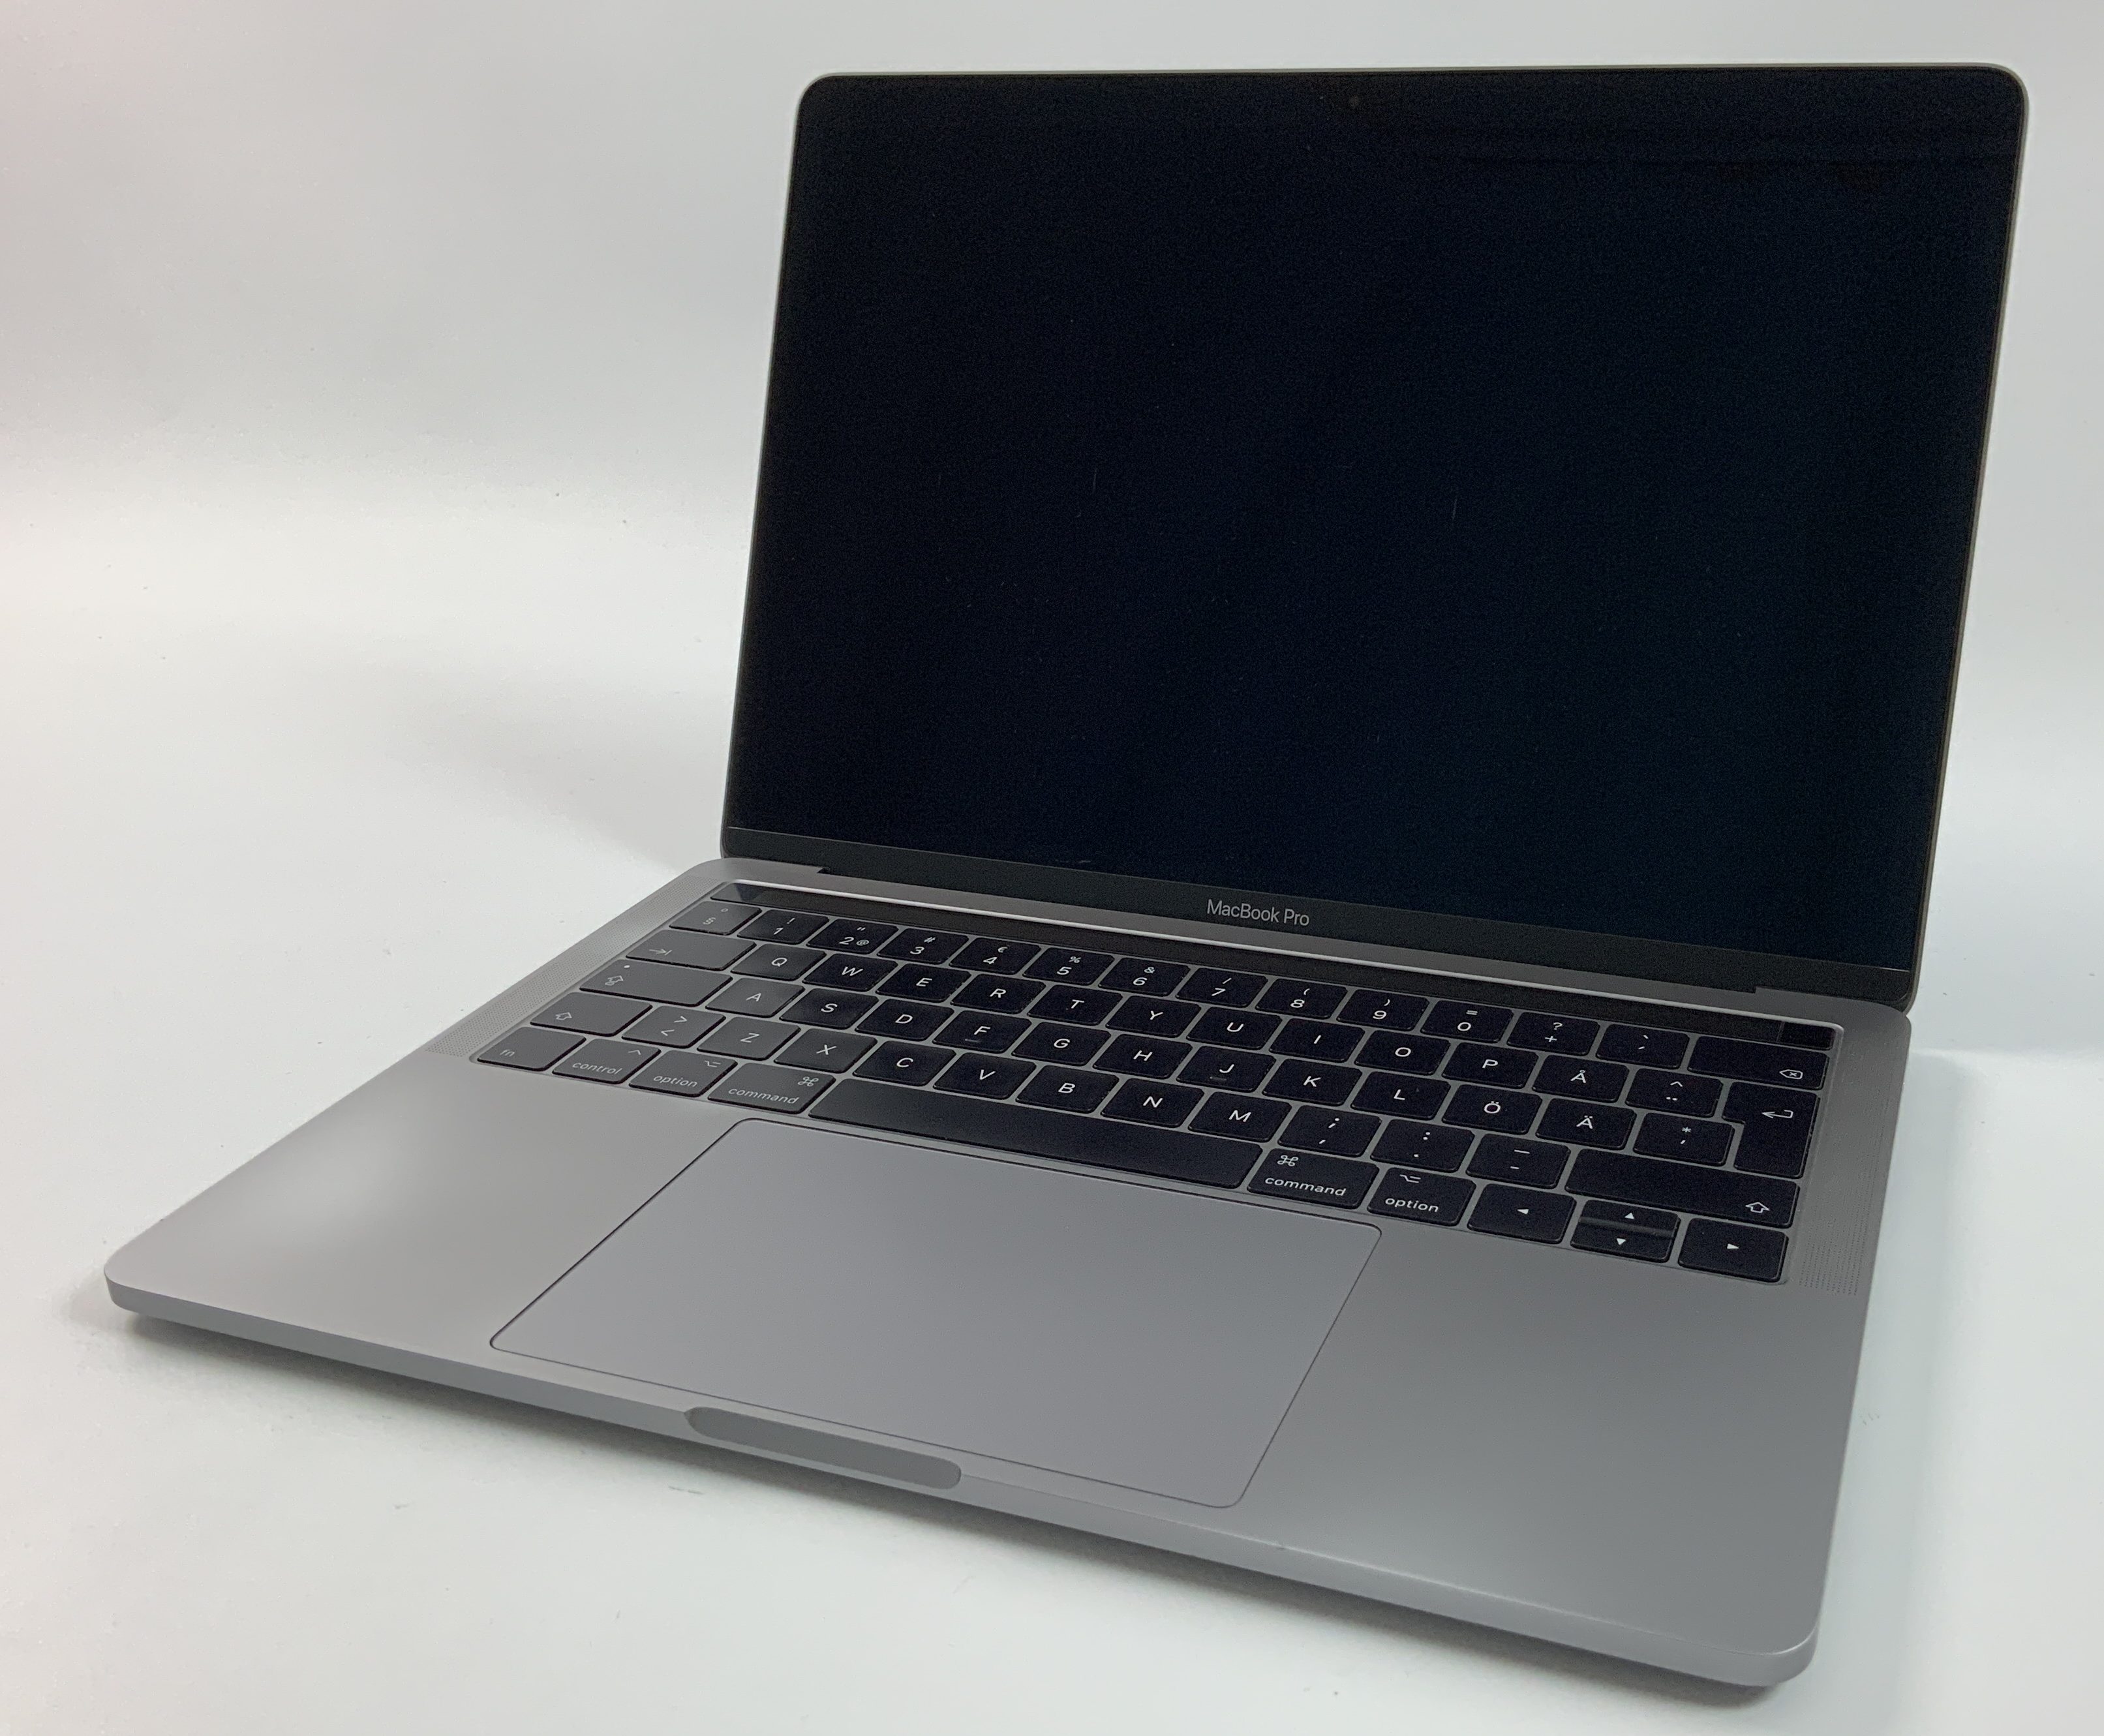 MacBook Pro 13" 4TBT Mid 2017 (Intel Core i5 3.1 GHz 16 GB RAM 256 GB SSD), Space Gray, Intel Core i5 3.1 GHz, 16 GB RAM, 256 GB SSD, Bild 1